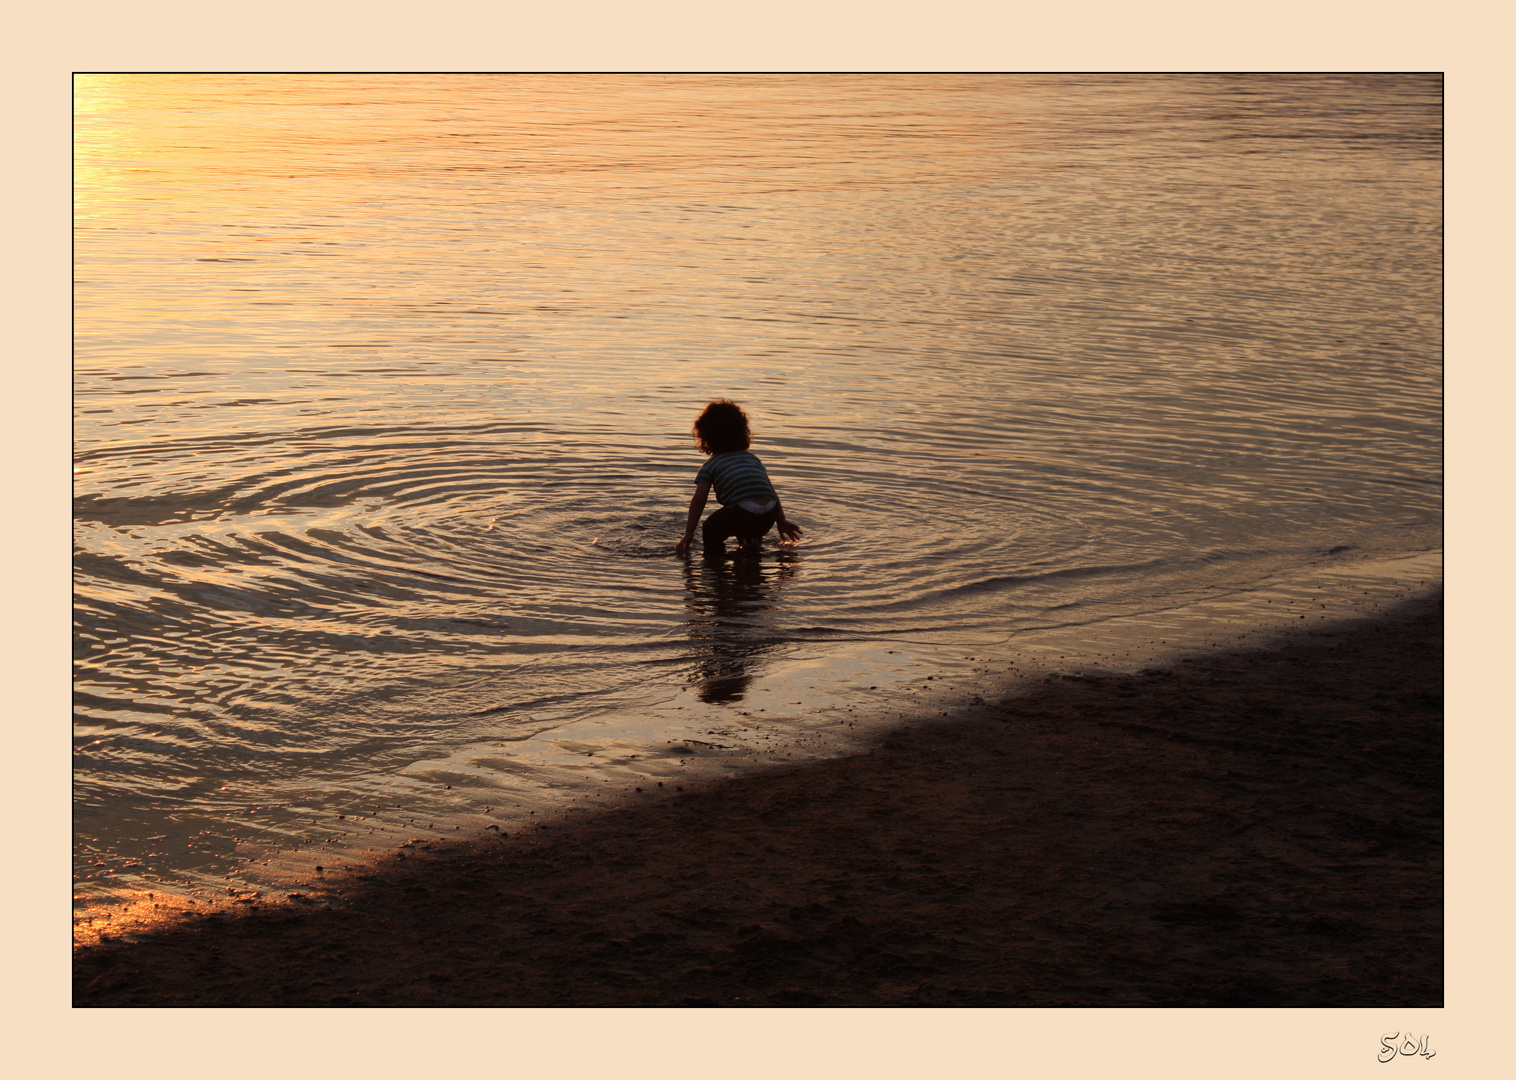 Círculos concéntricos de niño jugando en el agua al caer el sol.